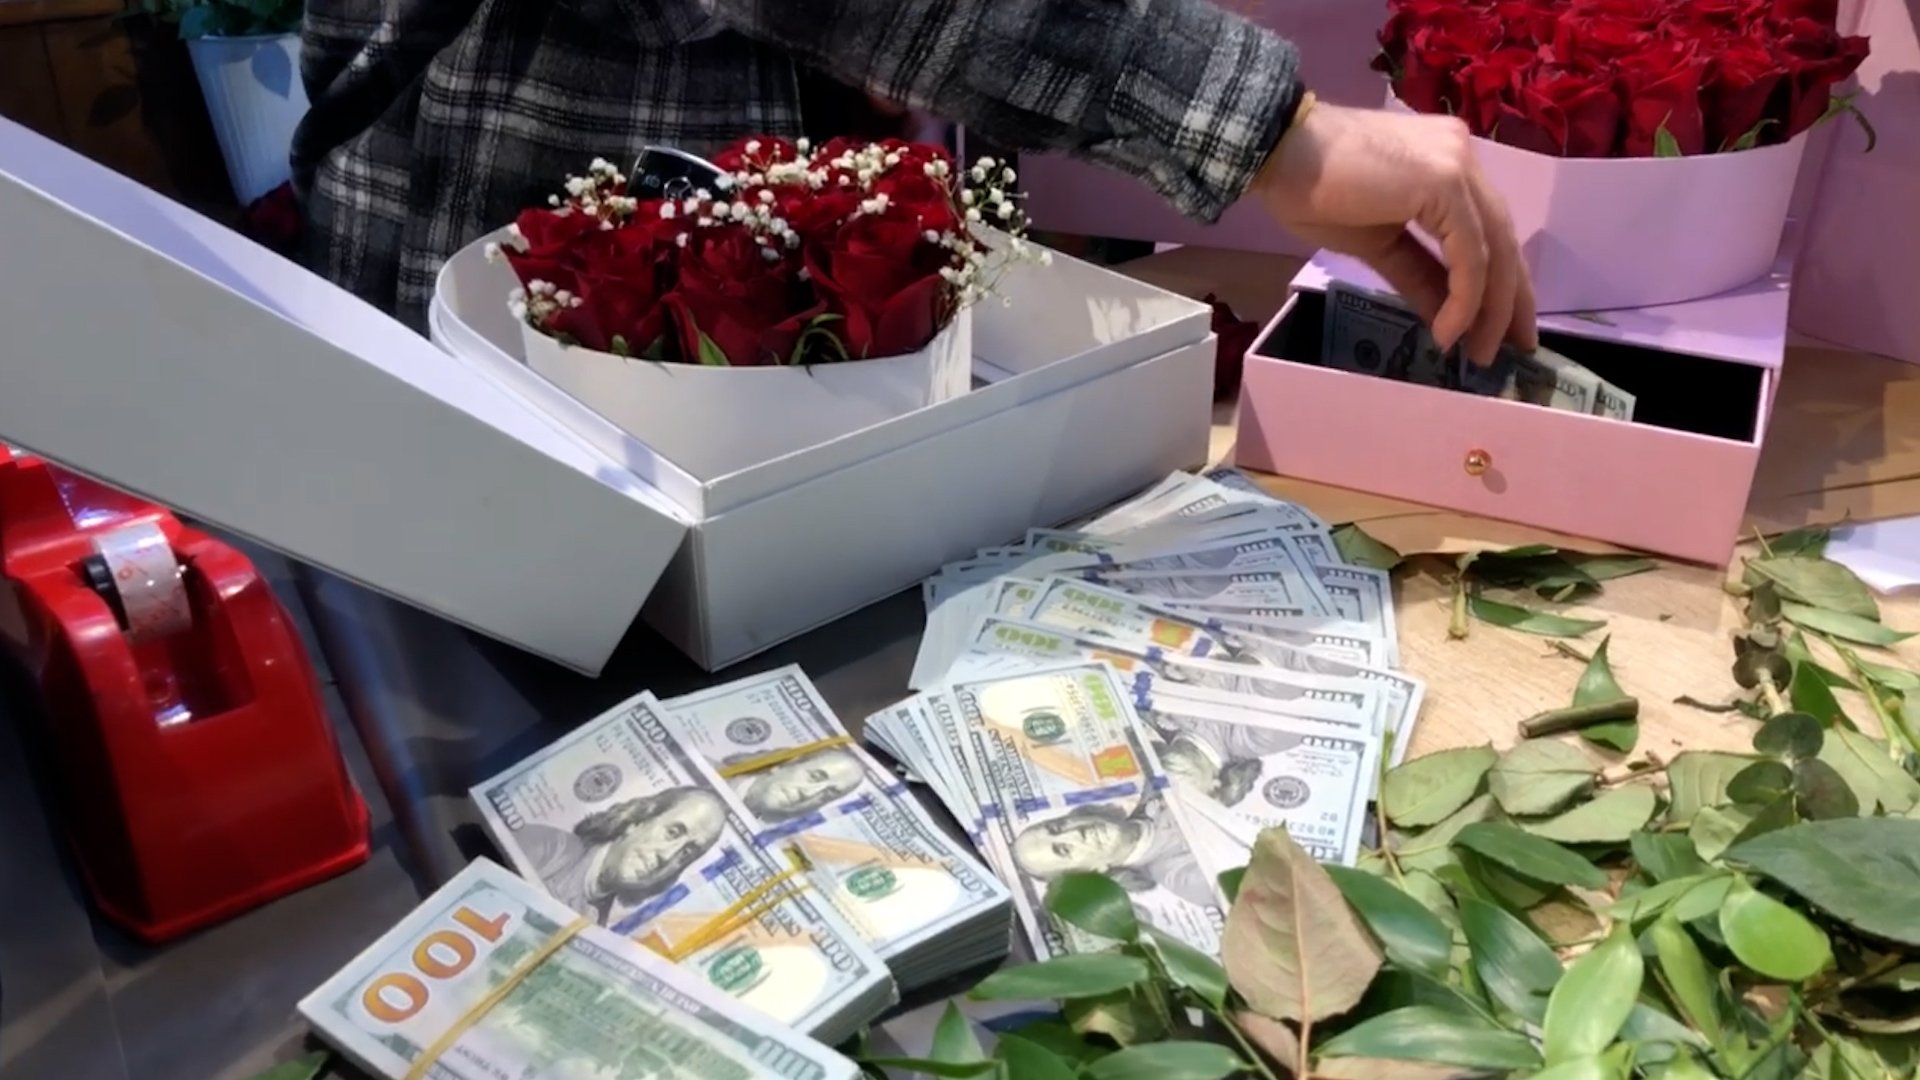 فيديو: سويج مرسيدس و5 شدات داخل باقة ورد.. هدايا مثيرة في فالنتاين أربيل